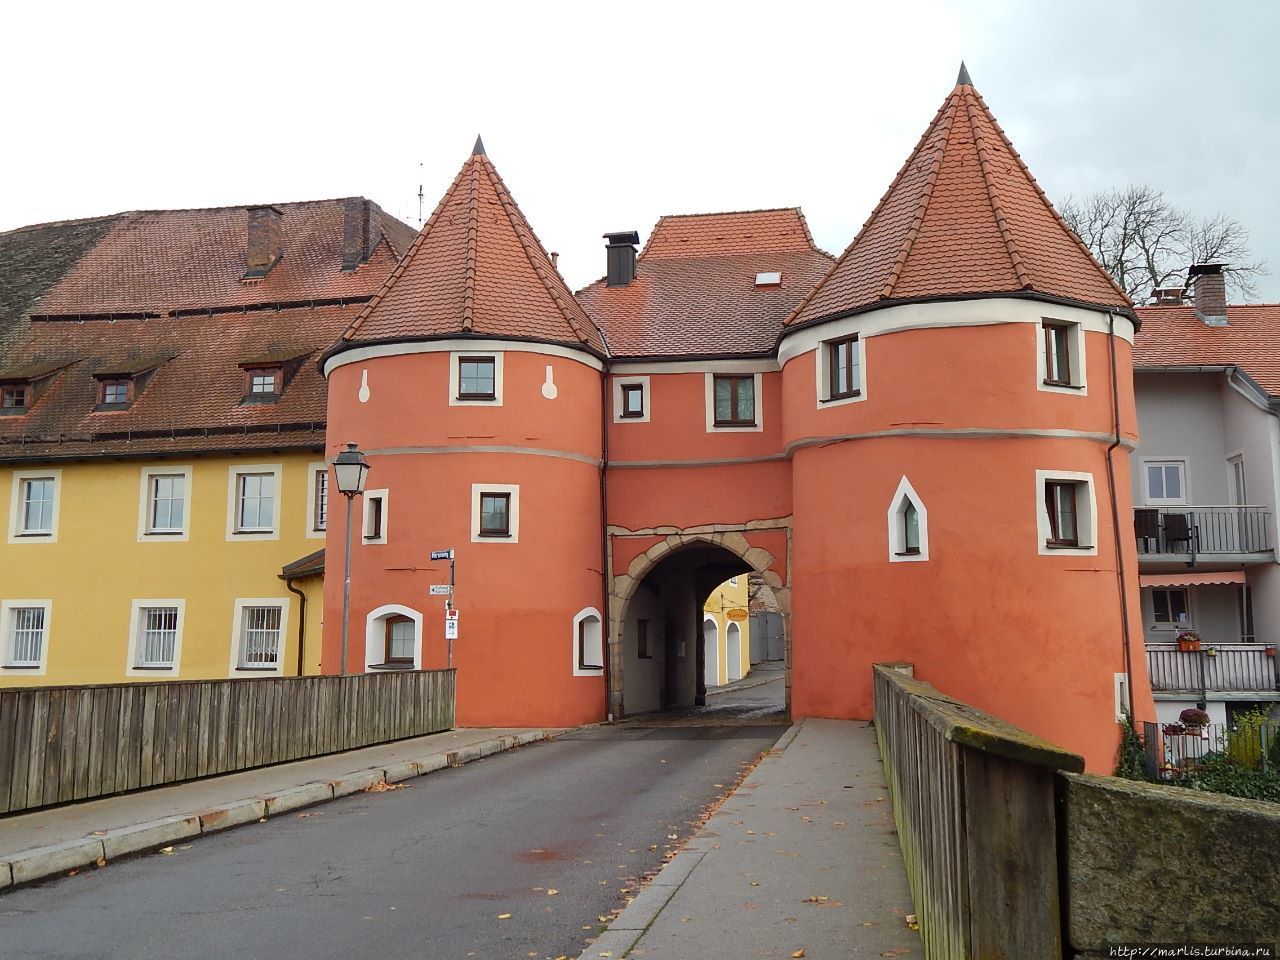 Пивные ворота — то, что осталось от крепостной стены. Кам, Германия